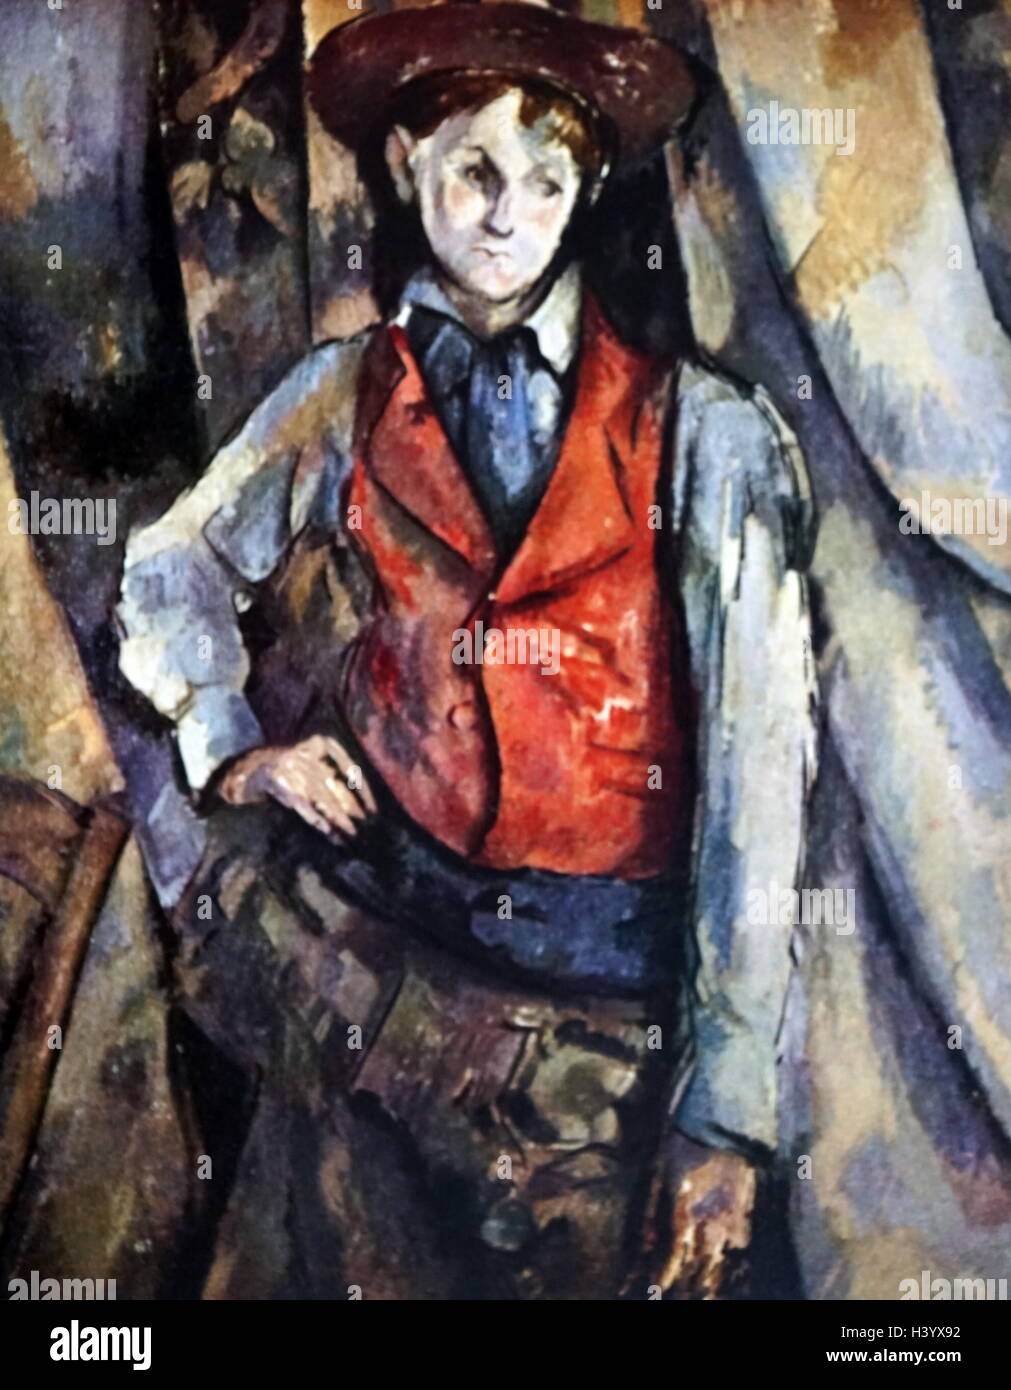 Gemälde mit dem Titel "Junge in einer roten Weste" von Paul Cézanne (1839-1906), ein französischer Künstler und post-impressionistischen Maler. Vom 19. Jahrhundert Stockfoto